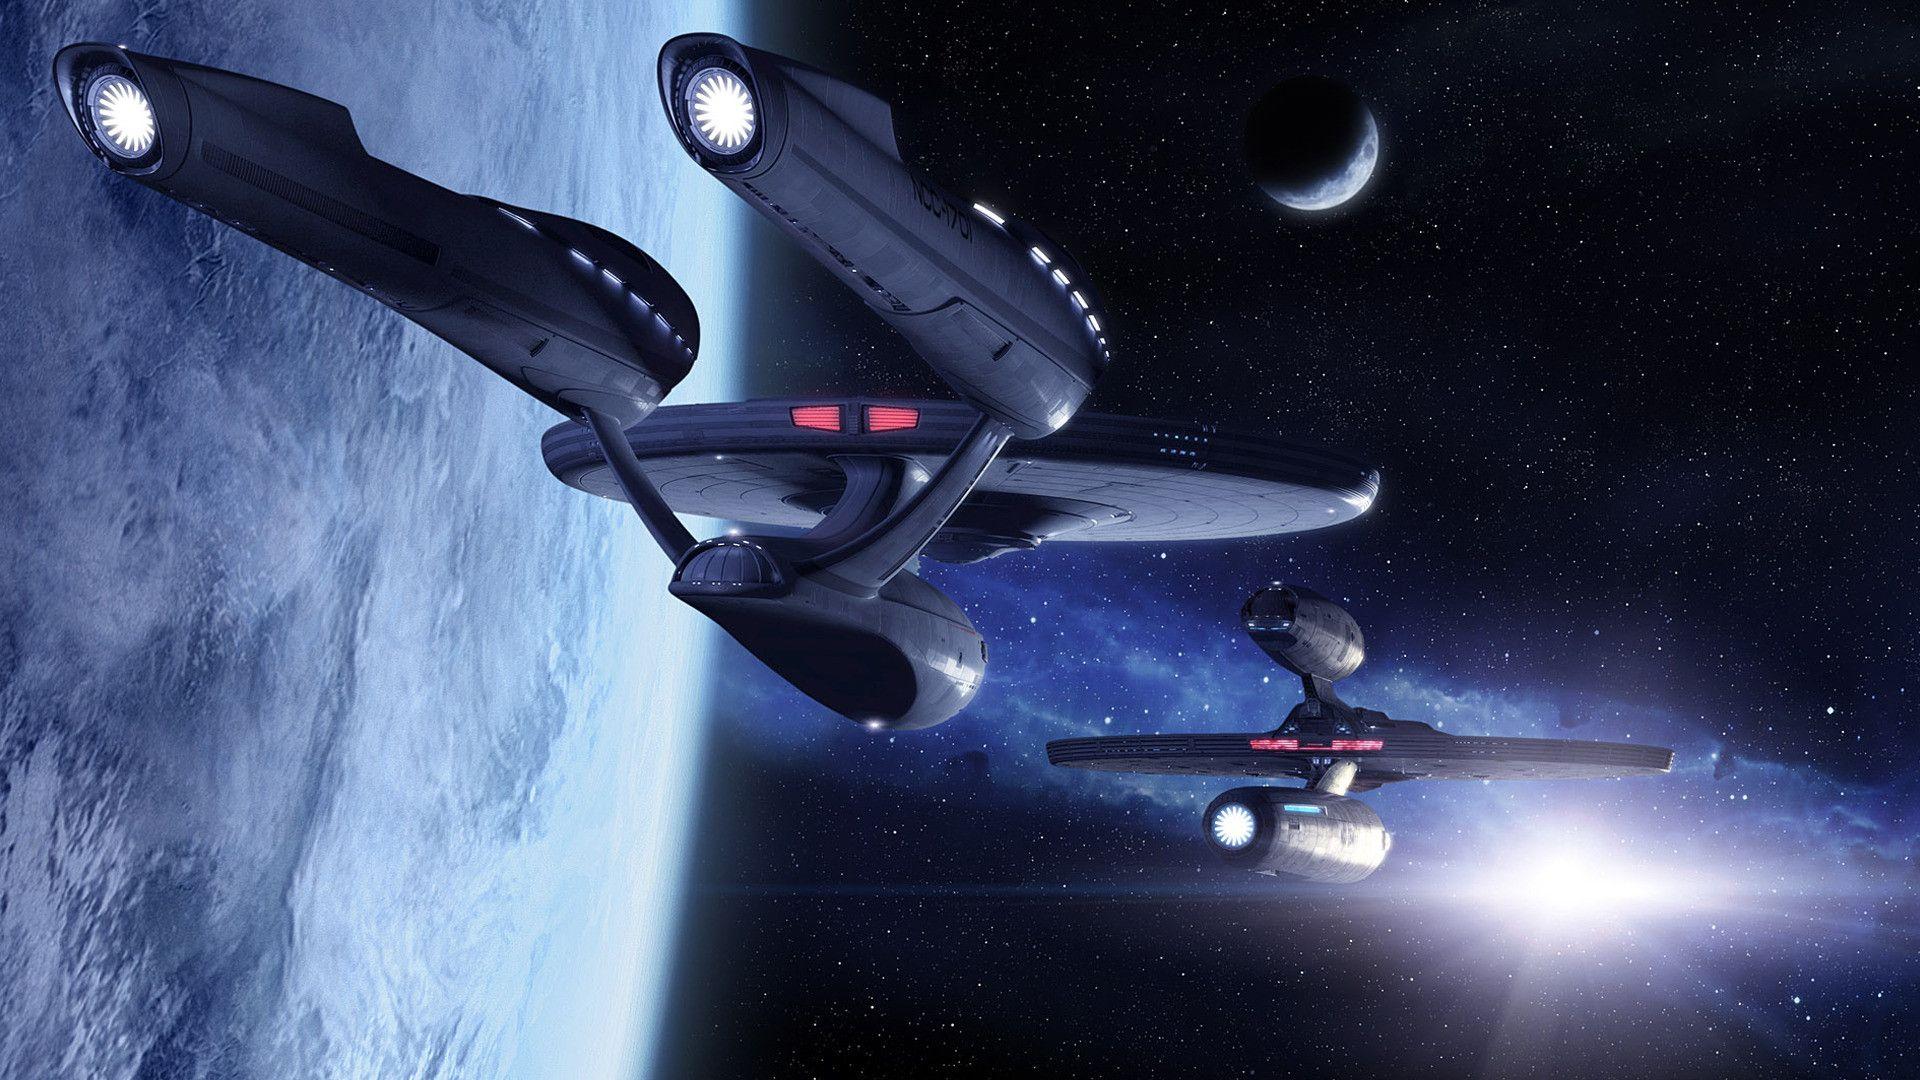 Star Trek Enterprise online, free